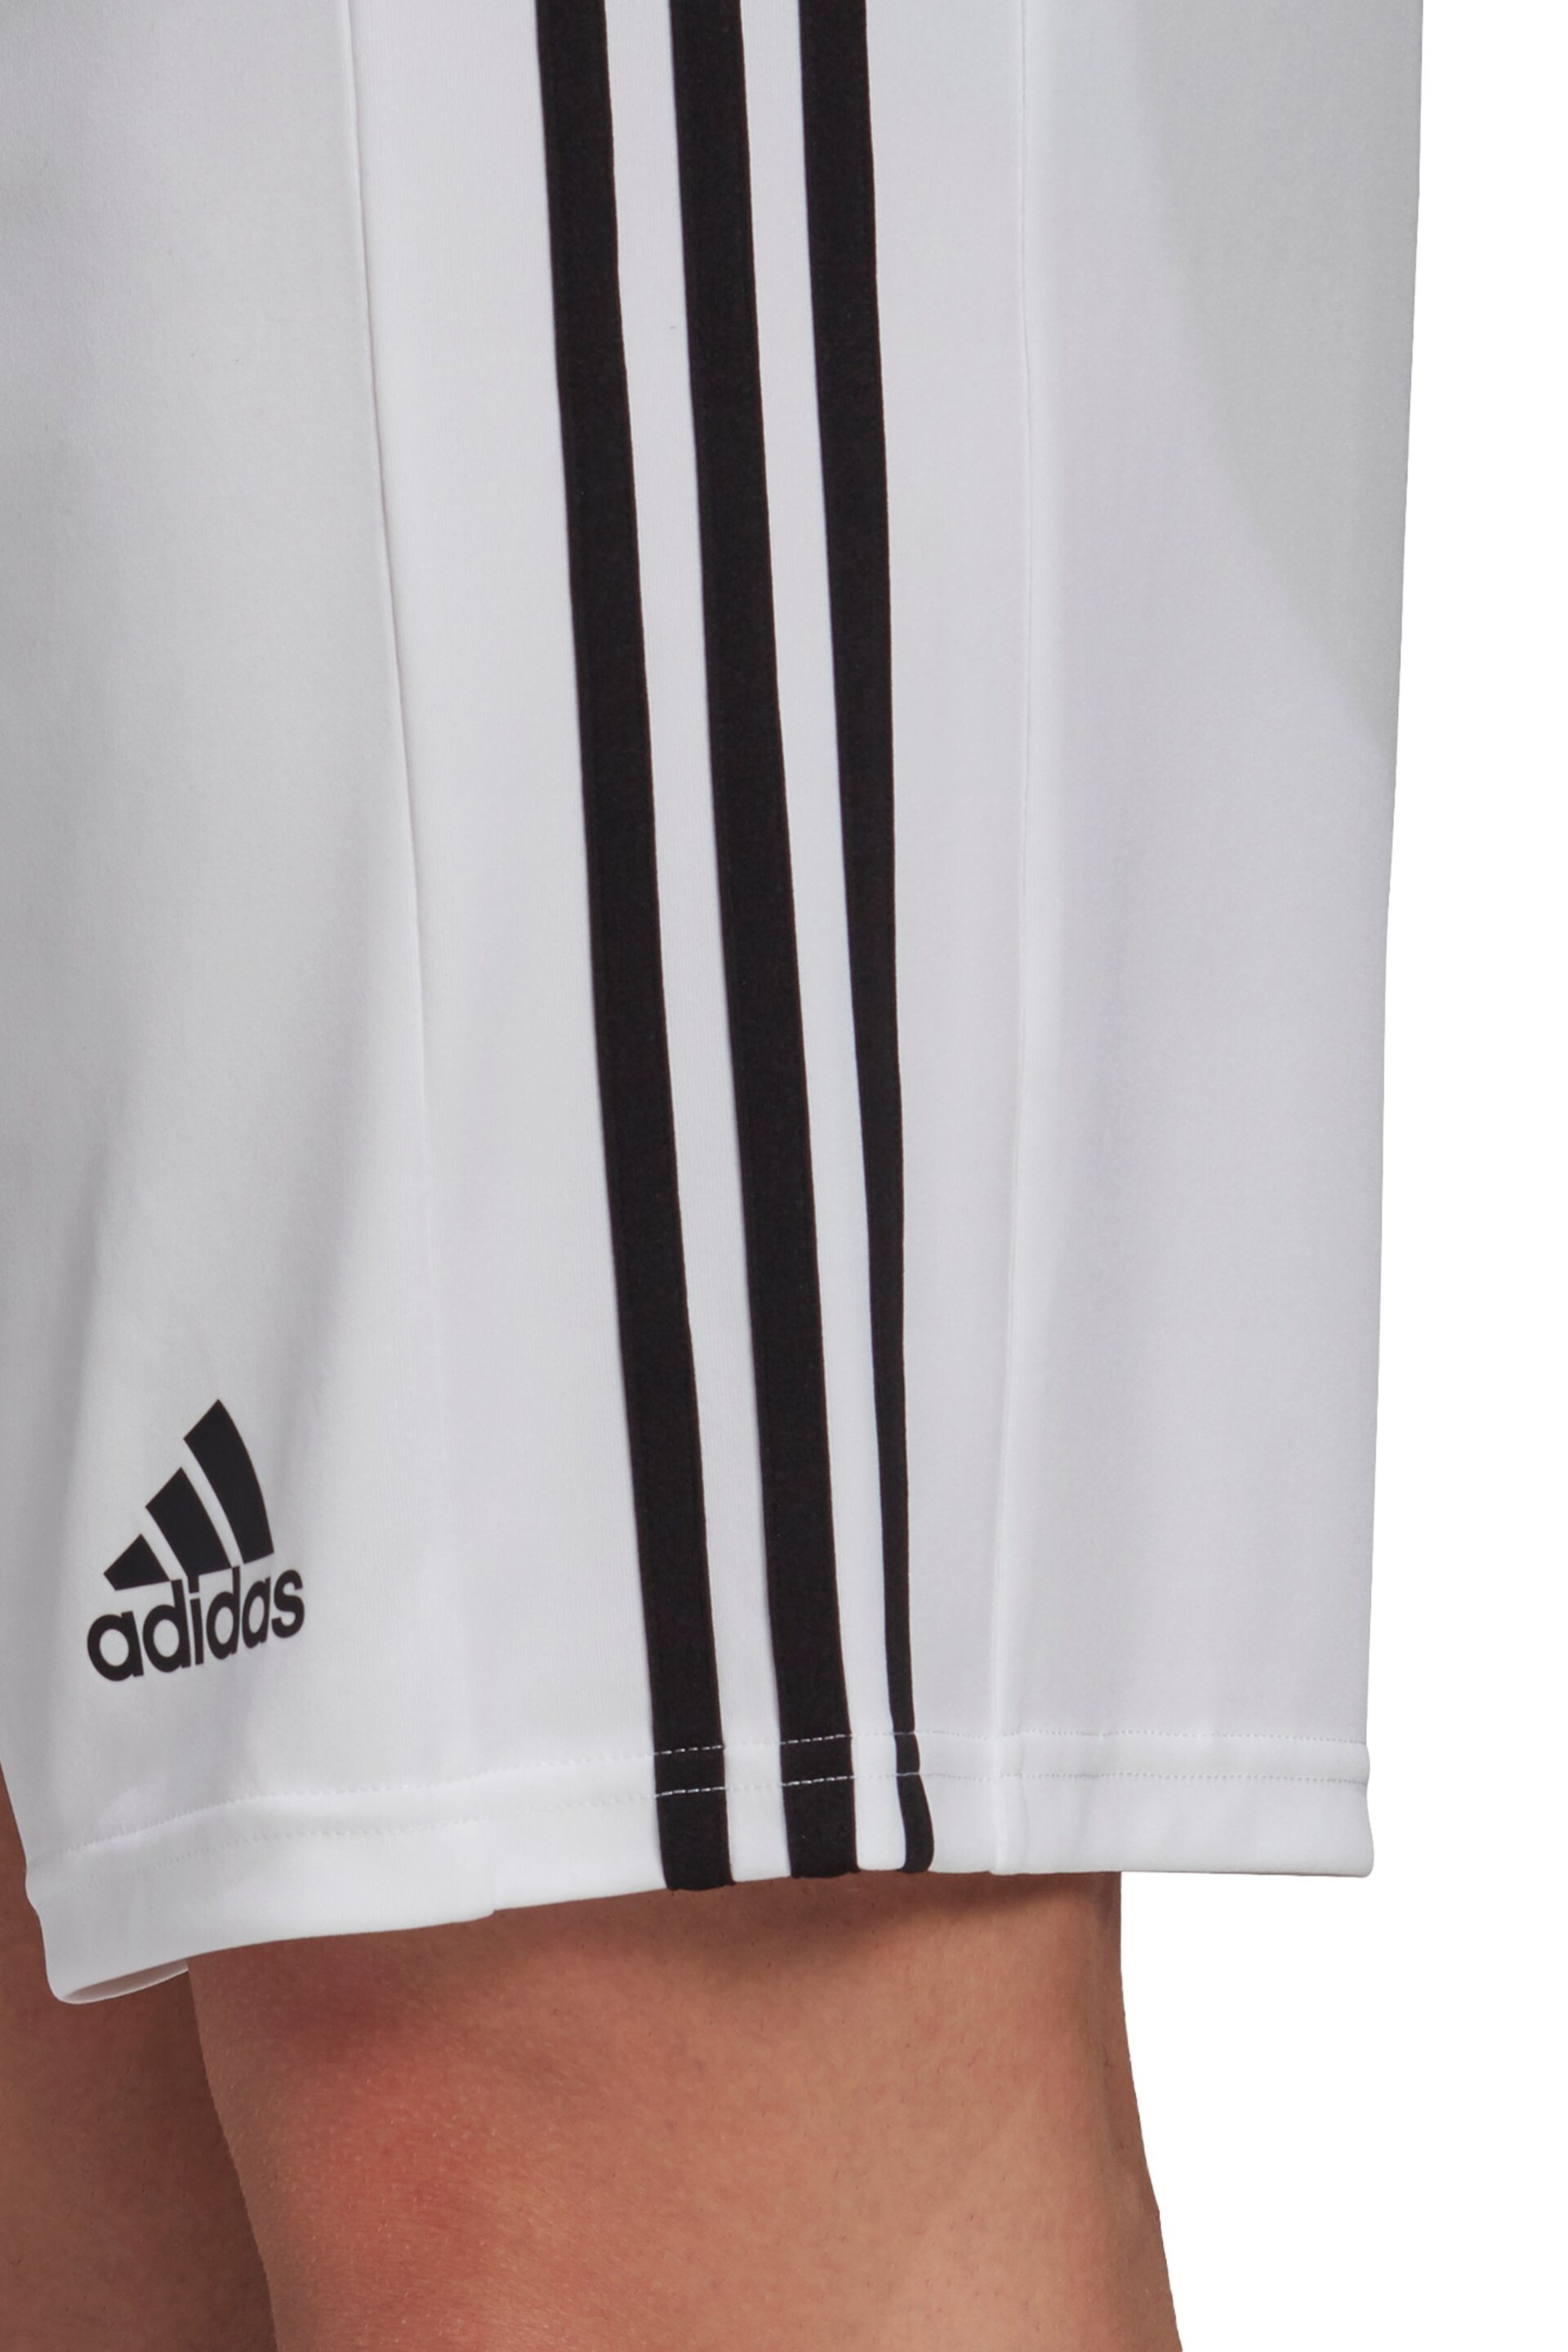 adidas White Football Squadra Shorts - Image 4 of 6